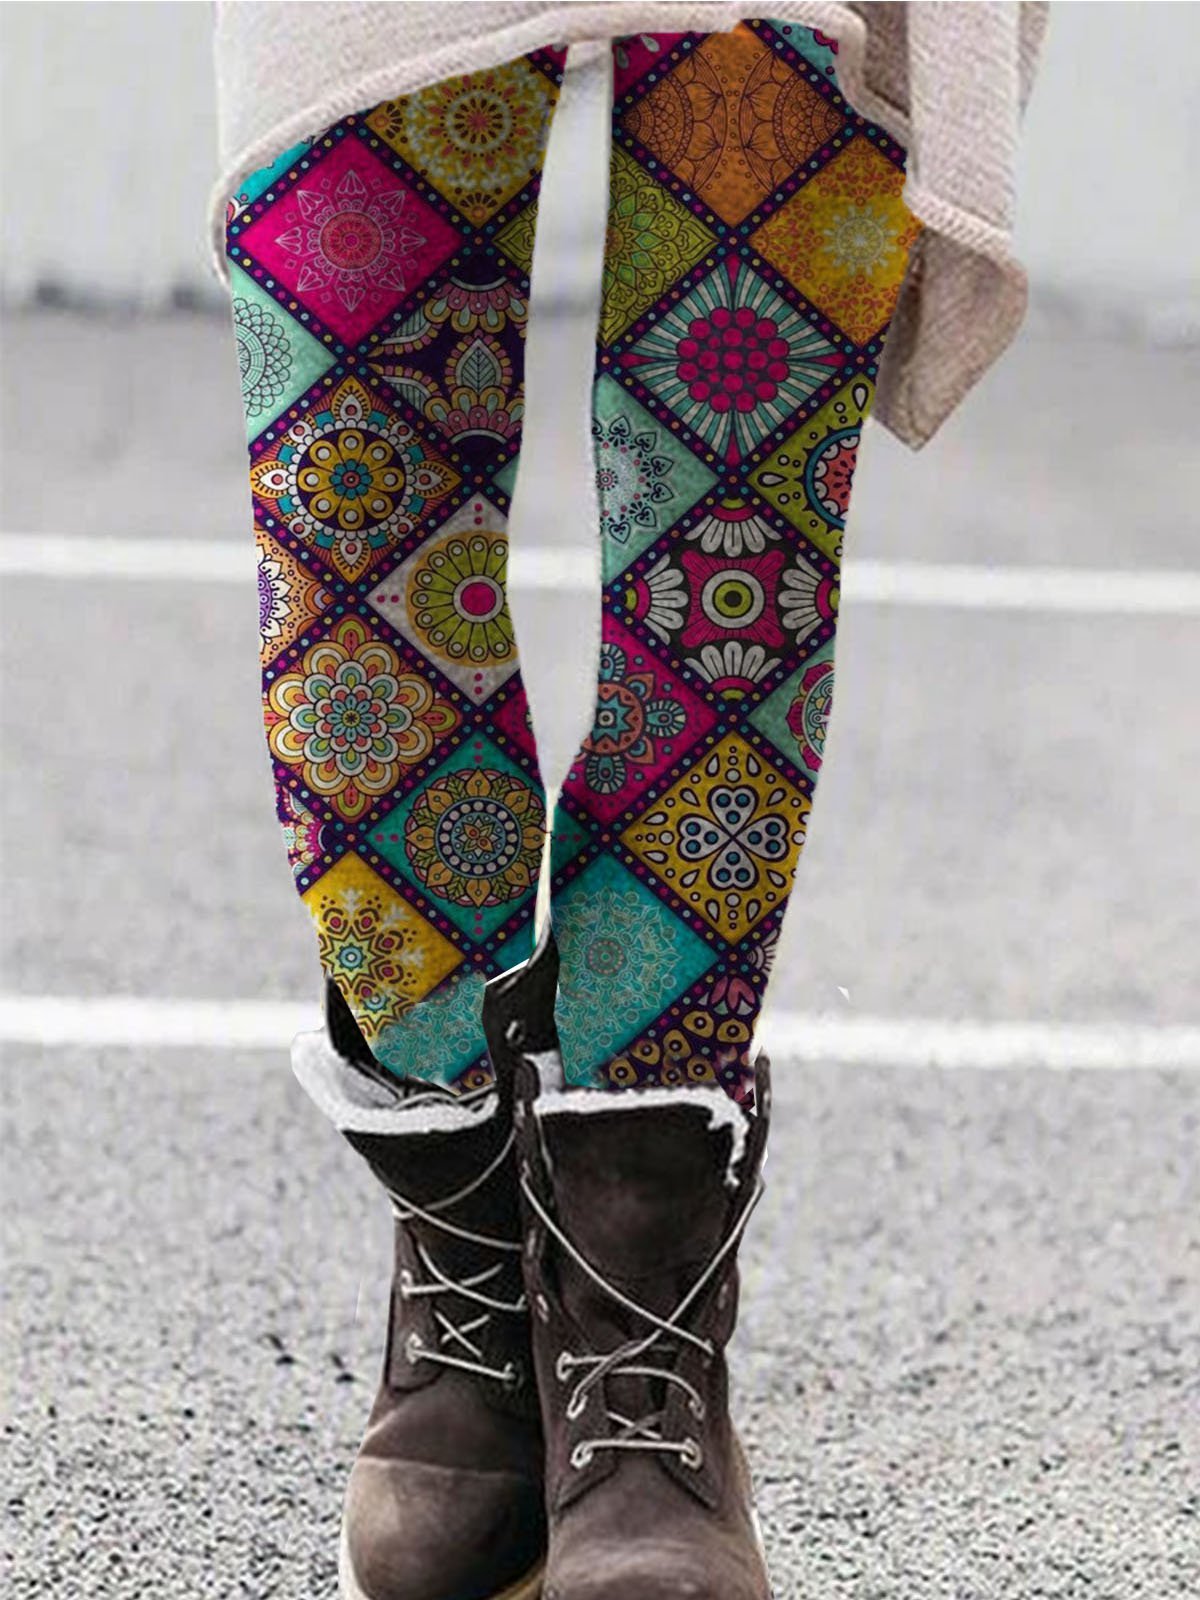 Legging Femme Rétro Pantalon De Yoga Moulants Imprimés Floraux en Mélangé de Coton